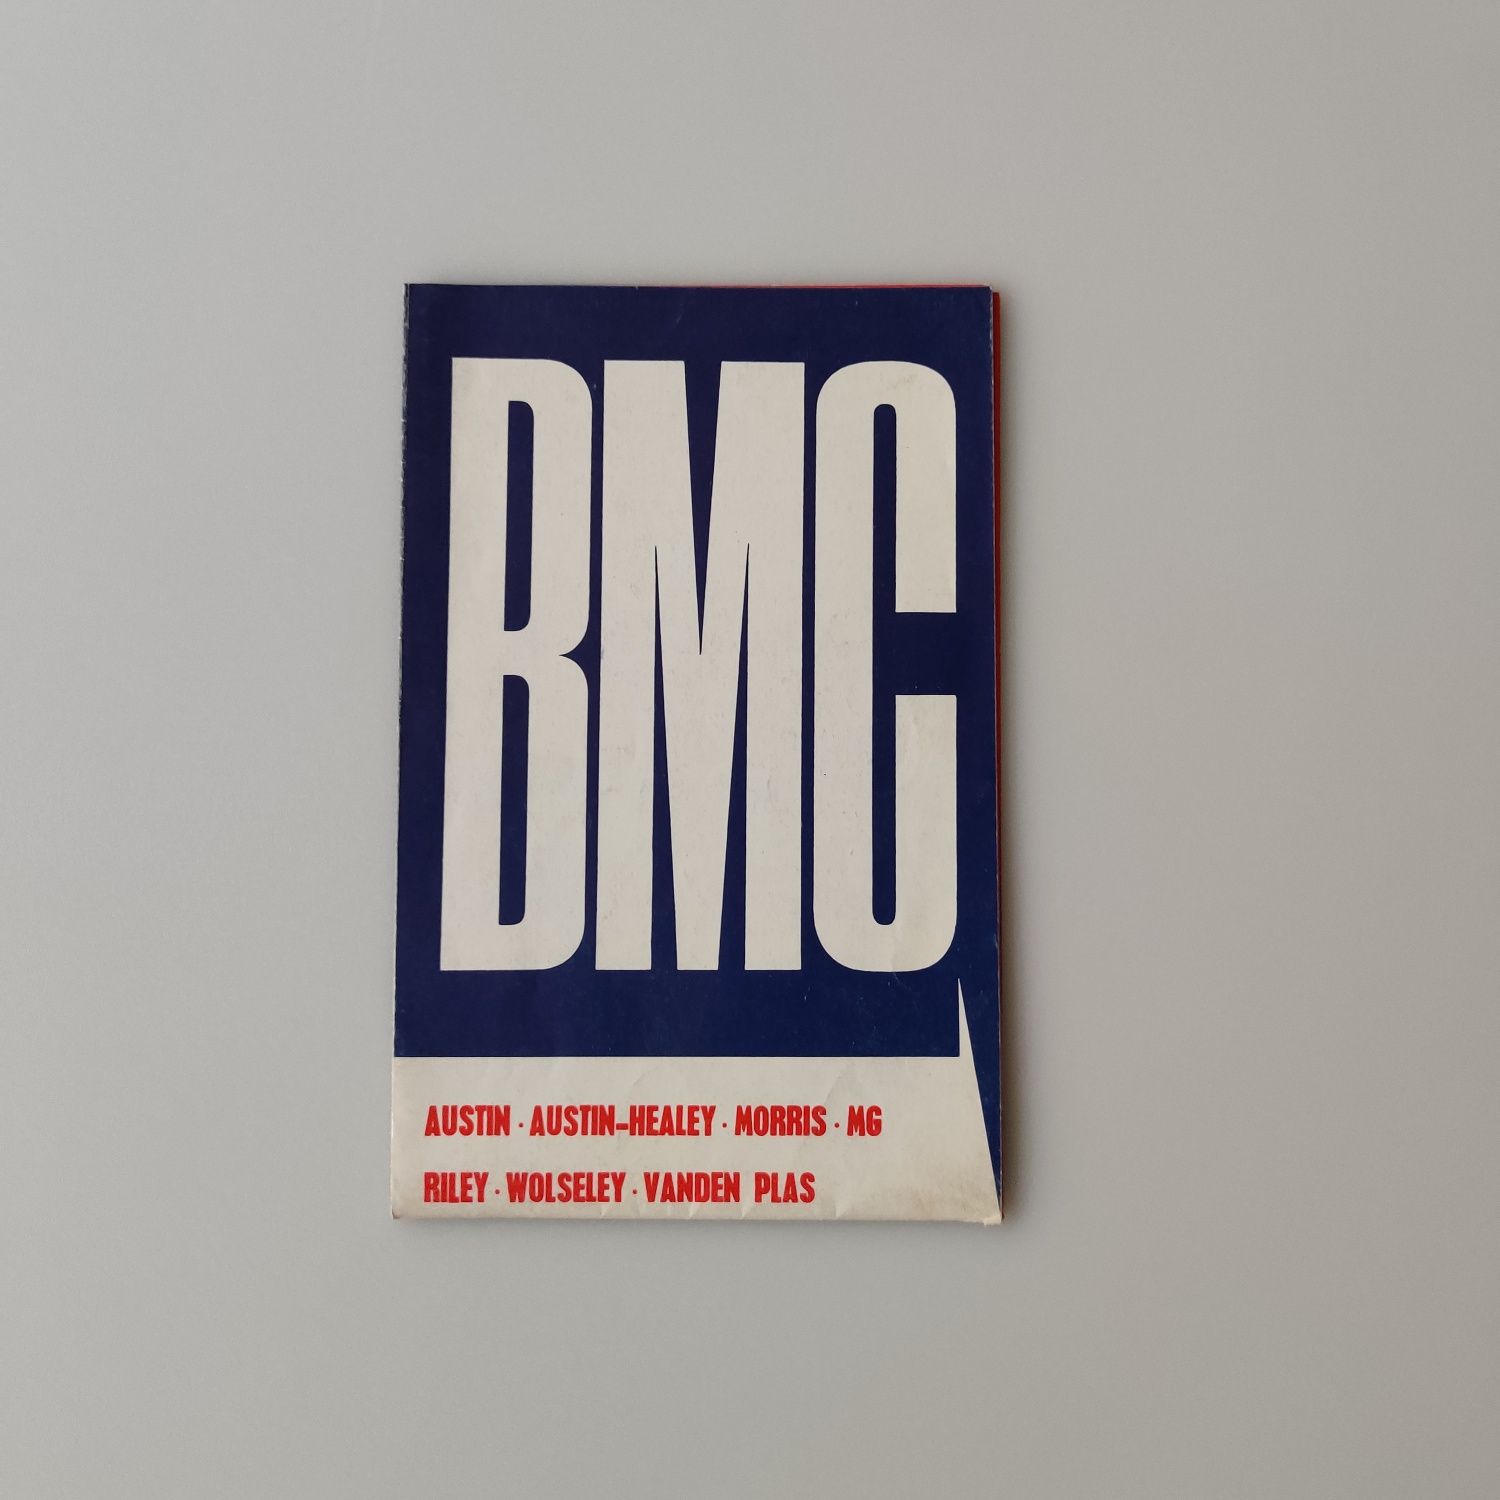 Prospekt motoryzacyjny brytyjskie samochody BMC lata 60 PRL